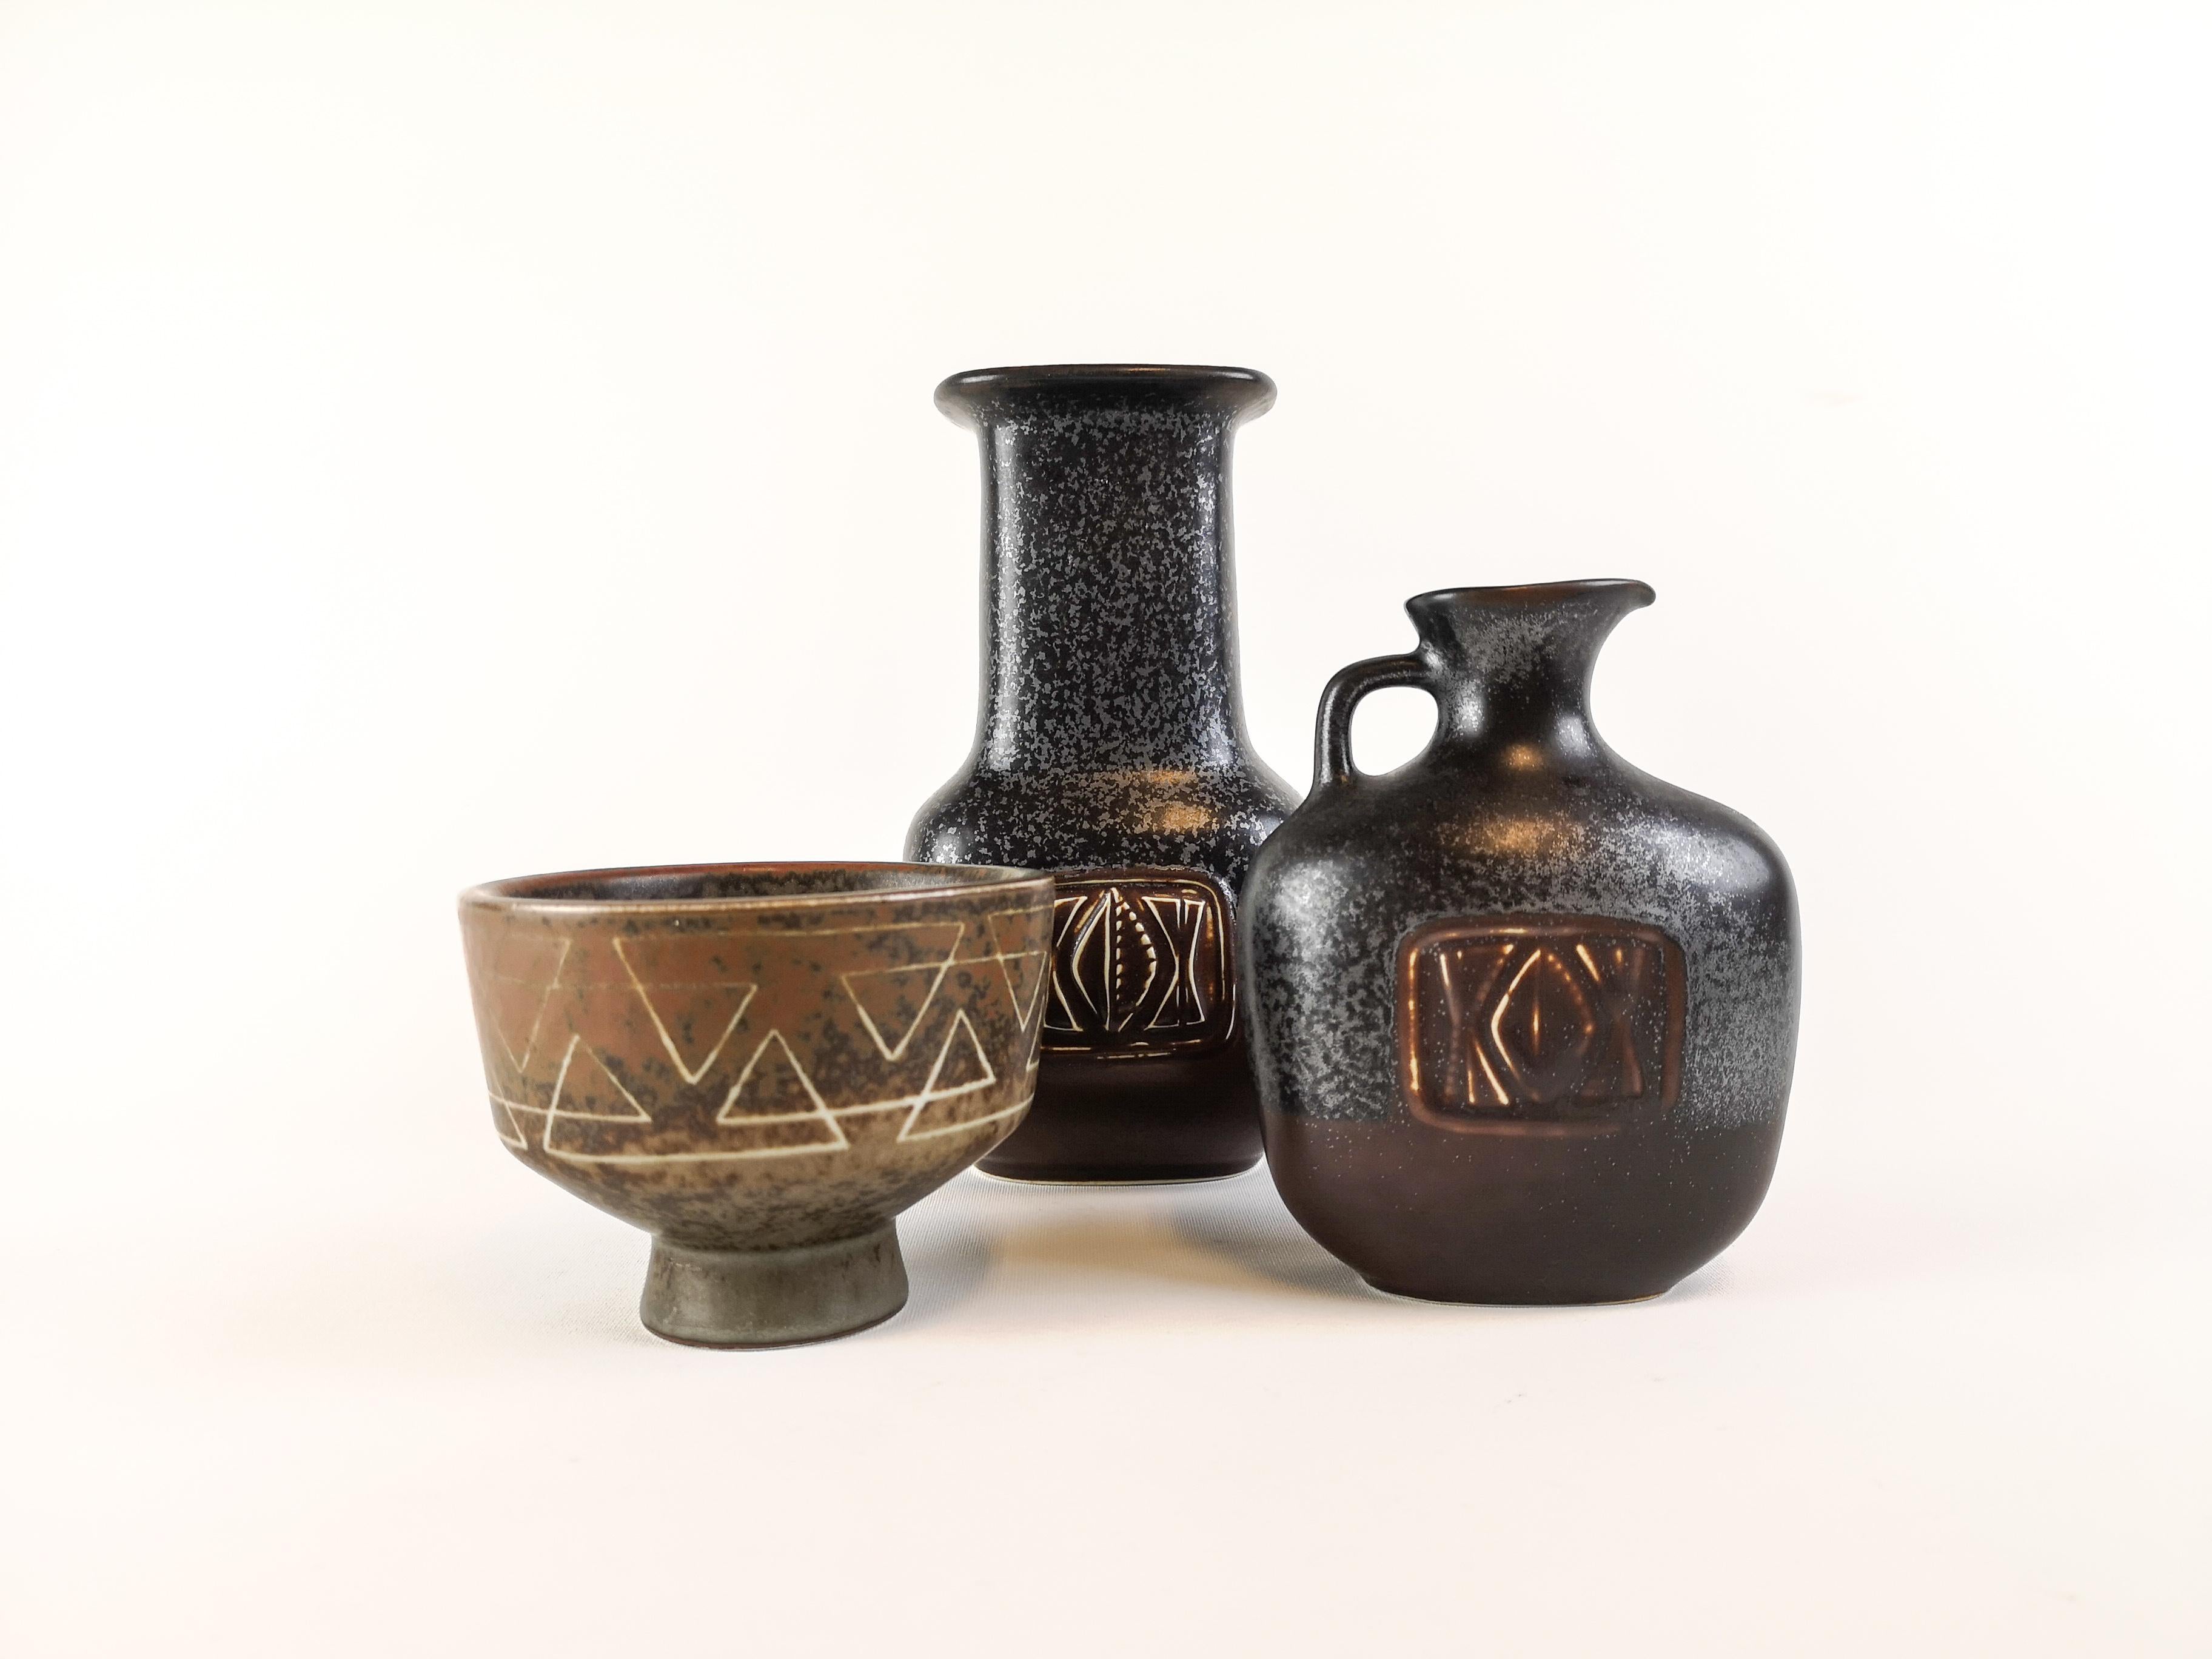 Trois magnifiques pièces fabriquées en Suède dans les années 1950 à l'usine de Rörstrand et conçues par Gunnar Nylund.

Les vases sont assortis au bol et donnent un aspect antique. Le vase et le bol sont joliment sculptés et présentent une belle